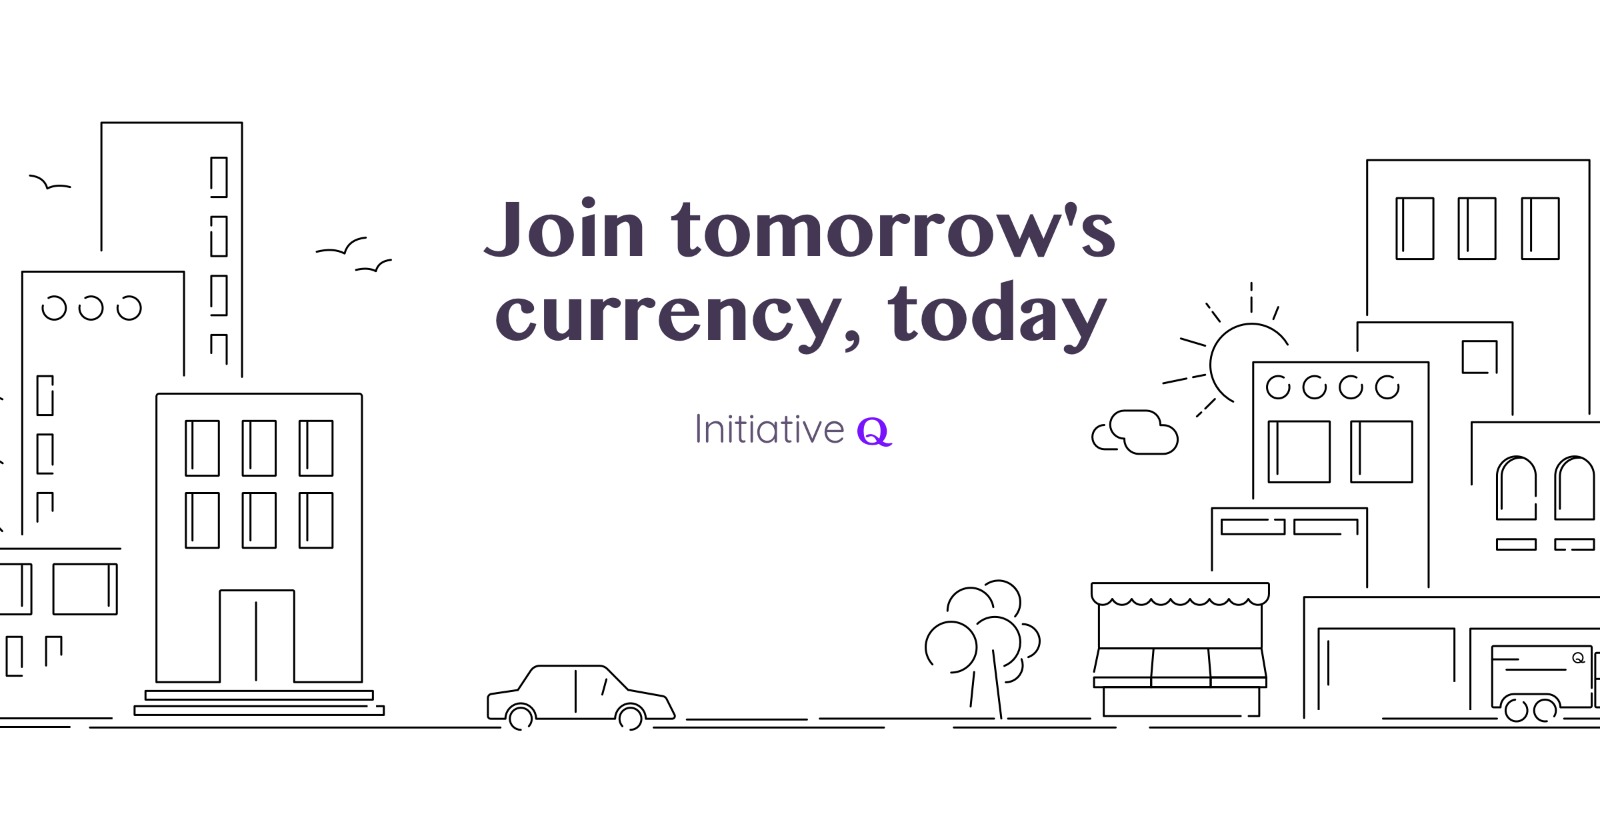 initiativeq.com